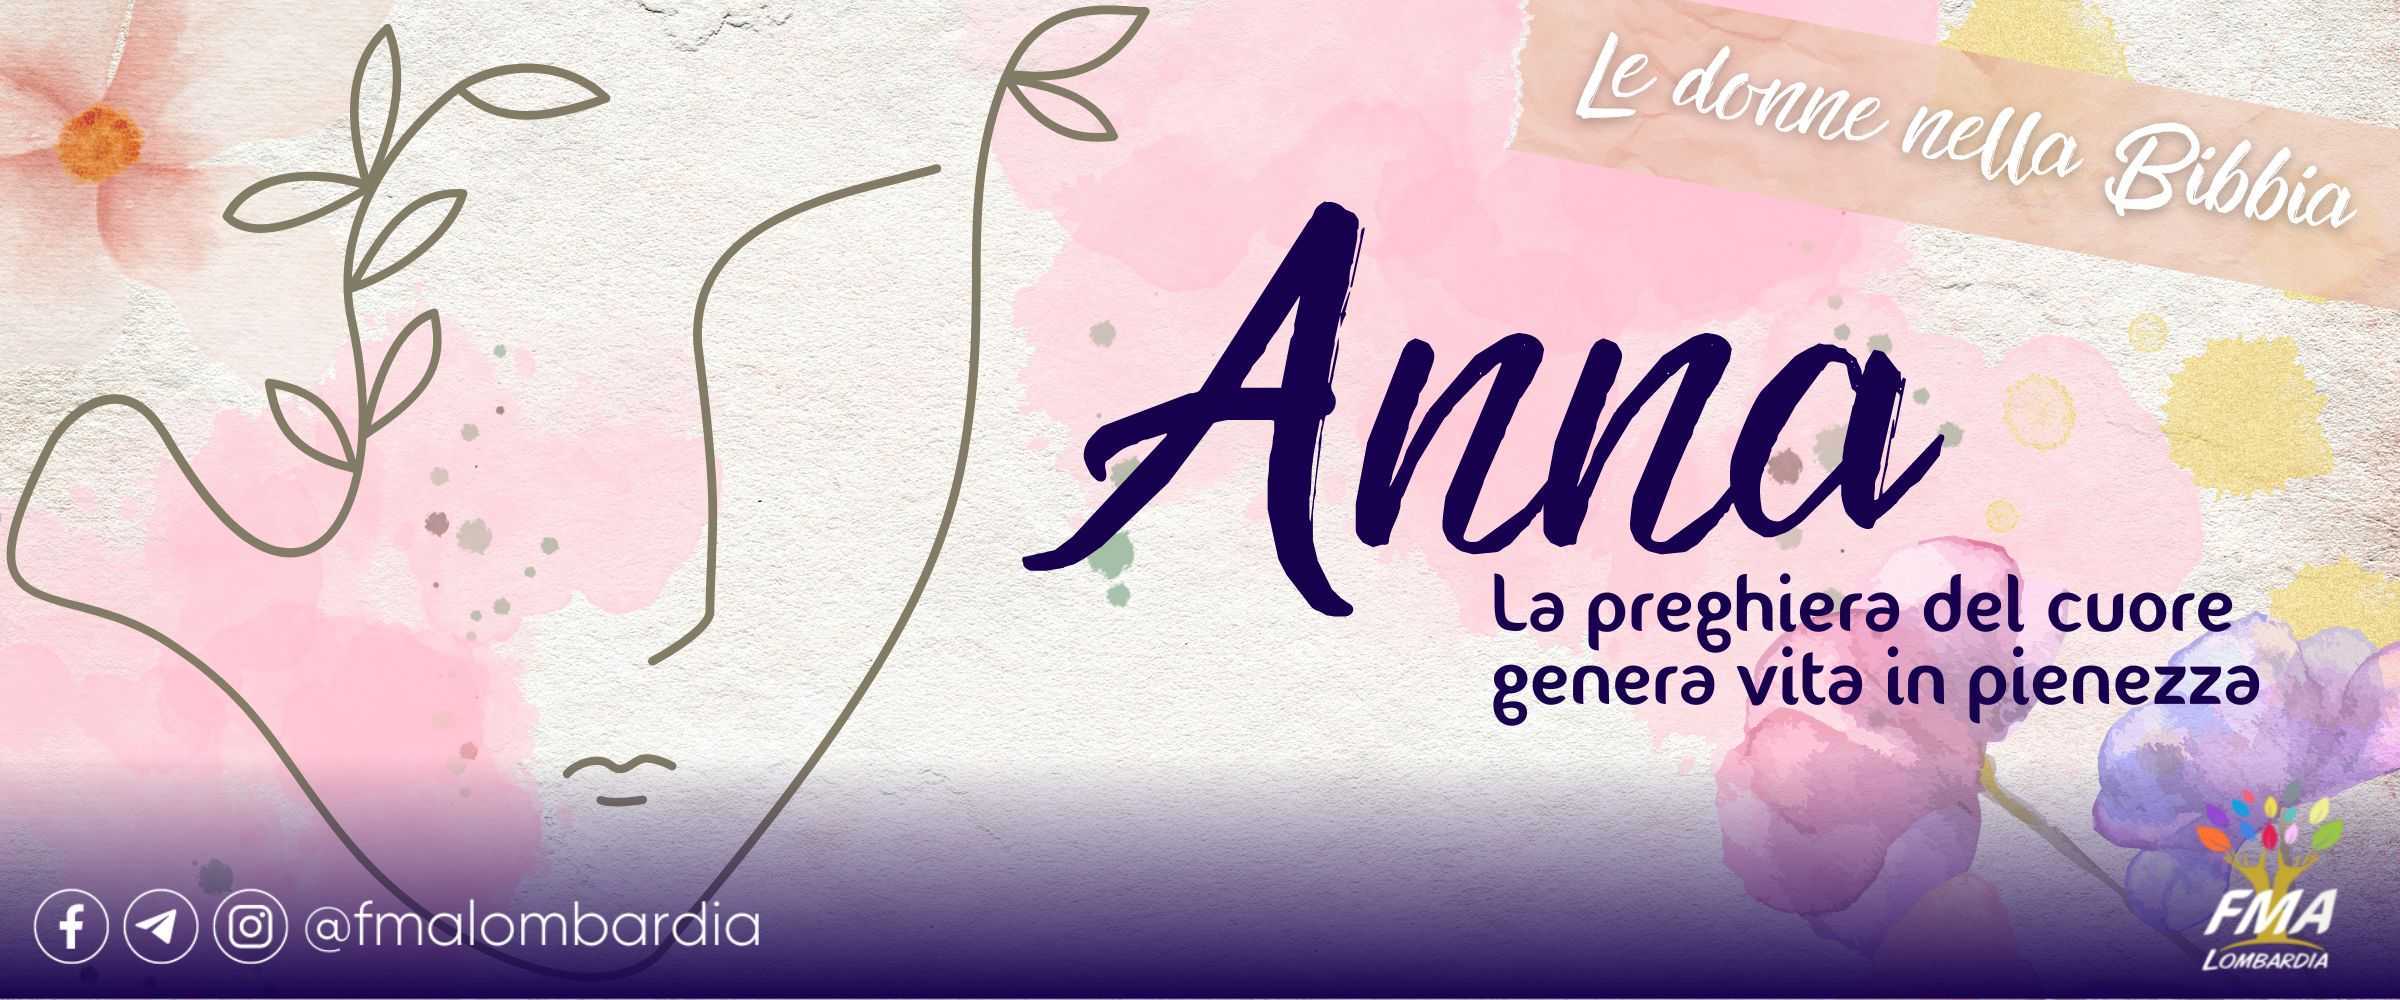 Le donne nella Bibbia – Anna